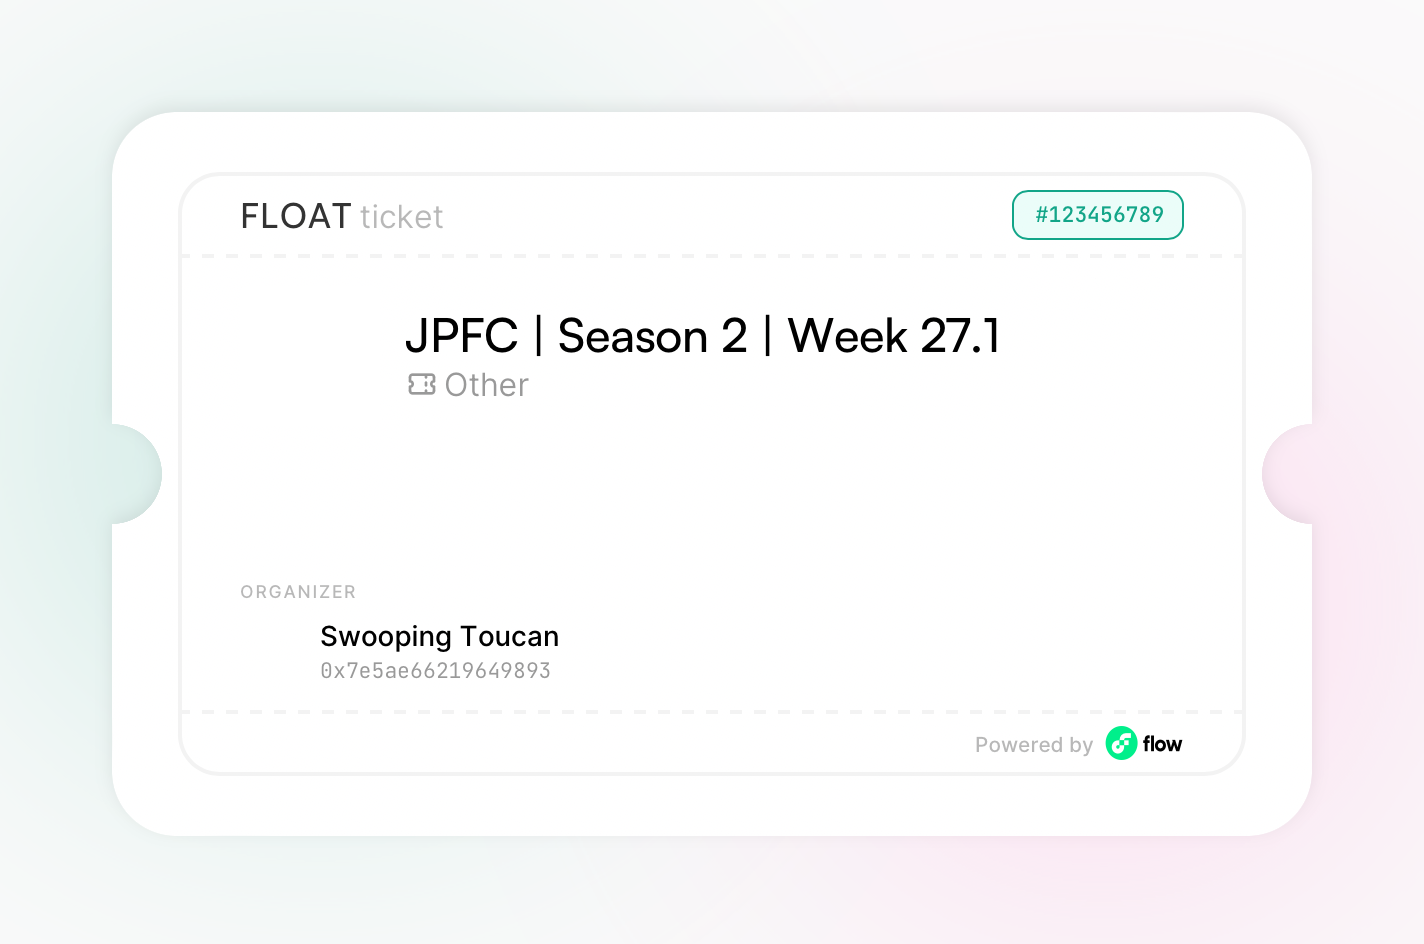 JPFC | Season 2 | Week 27.1 asset